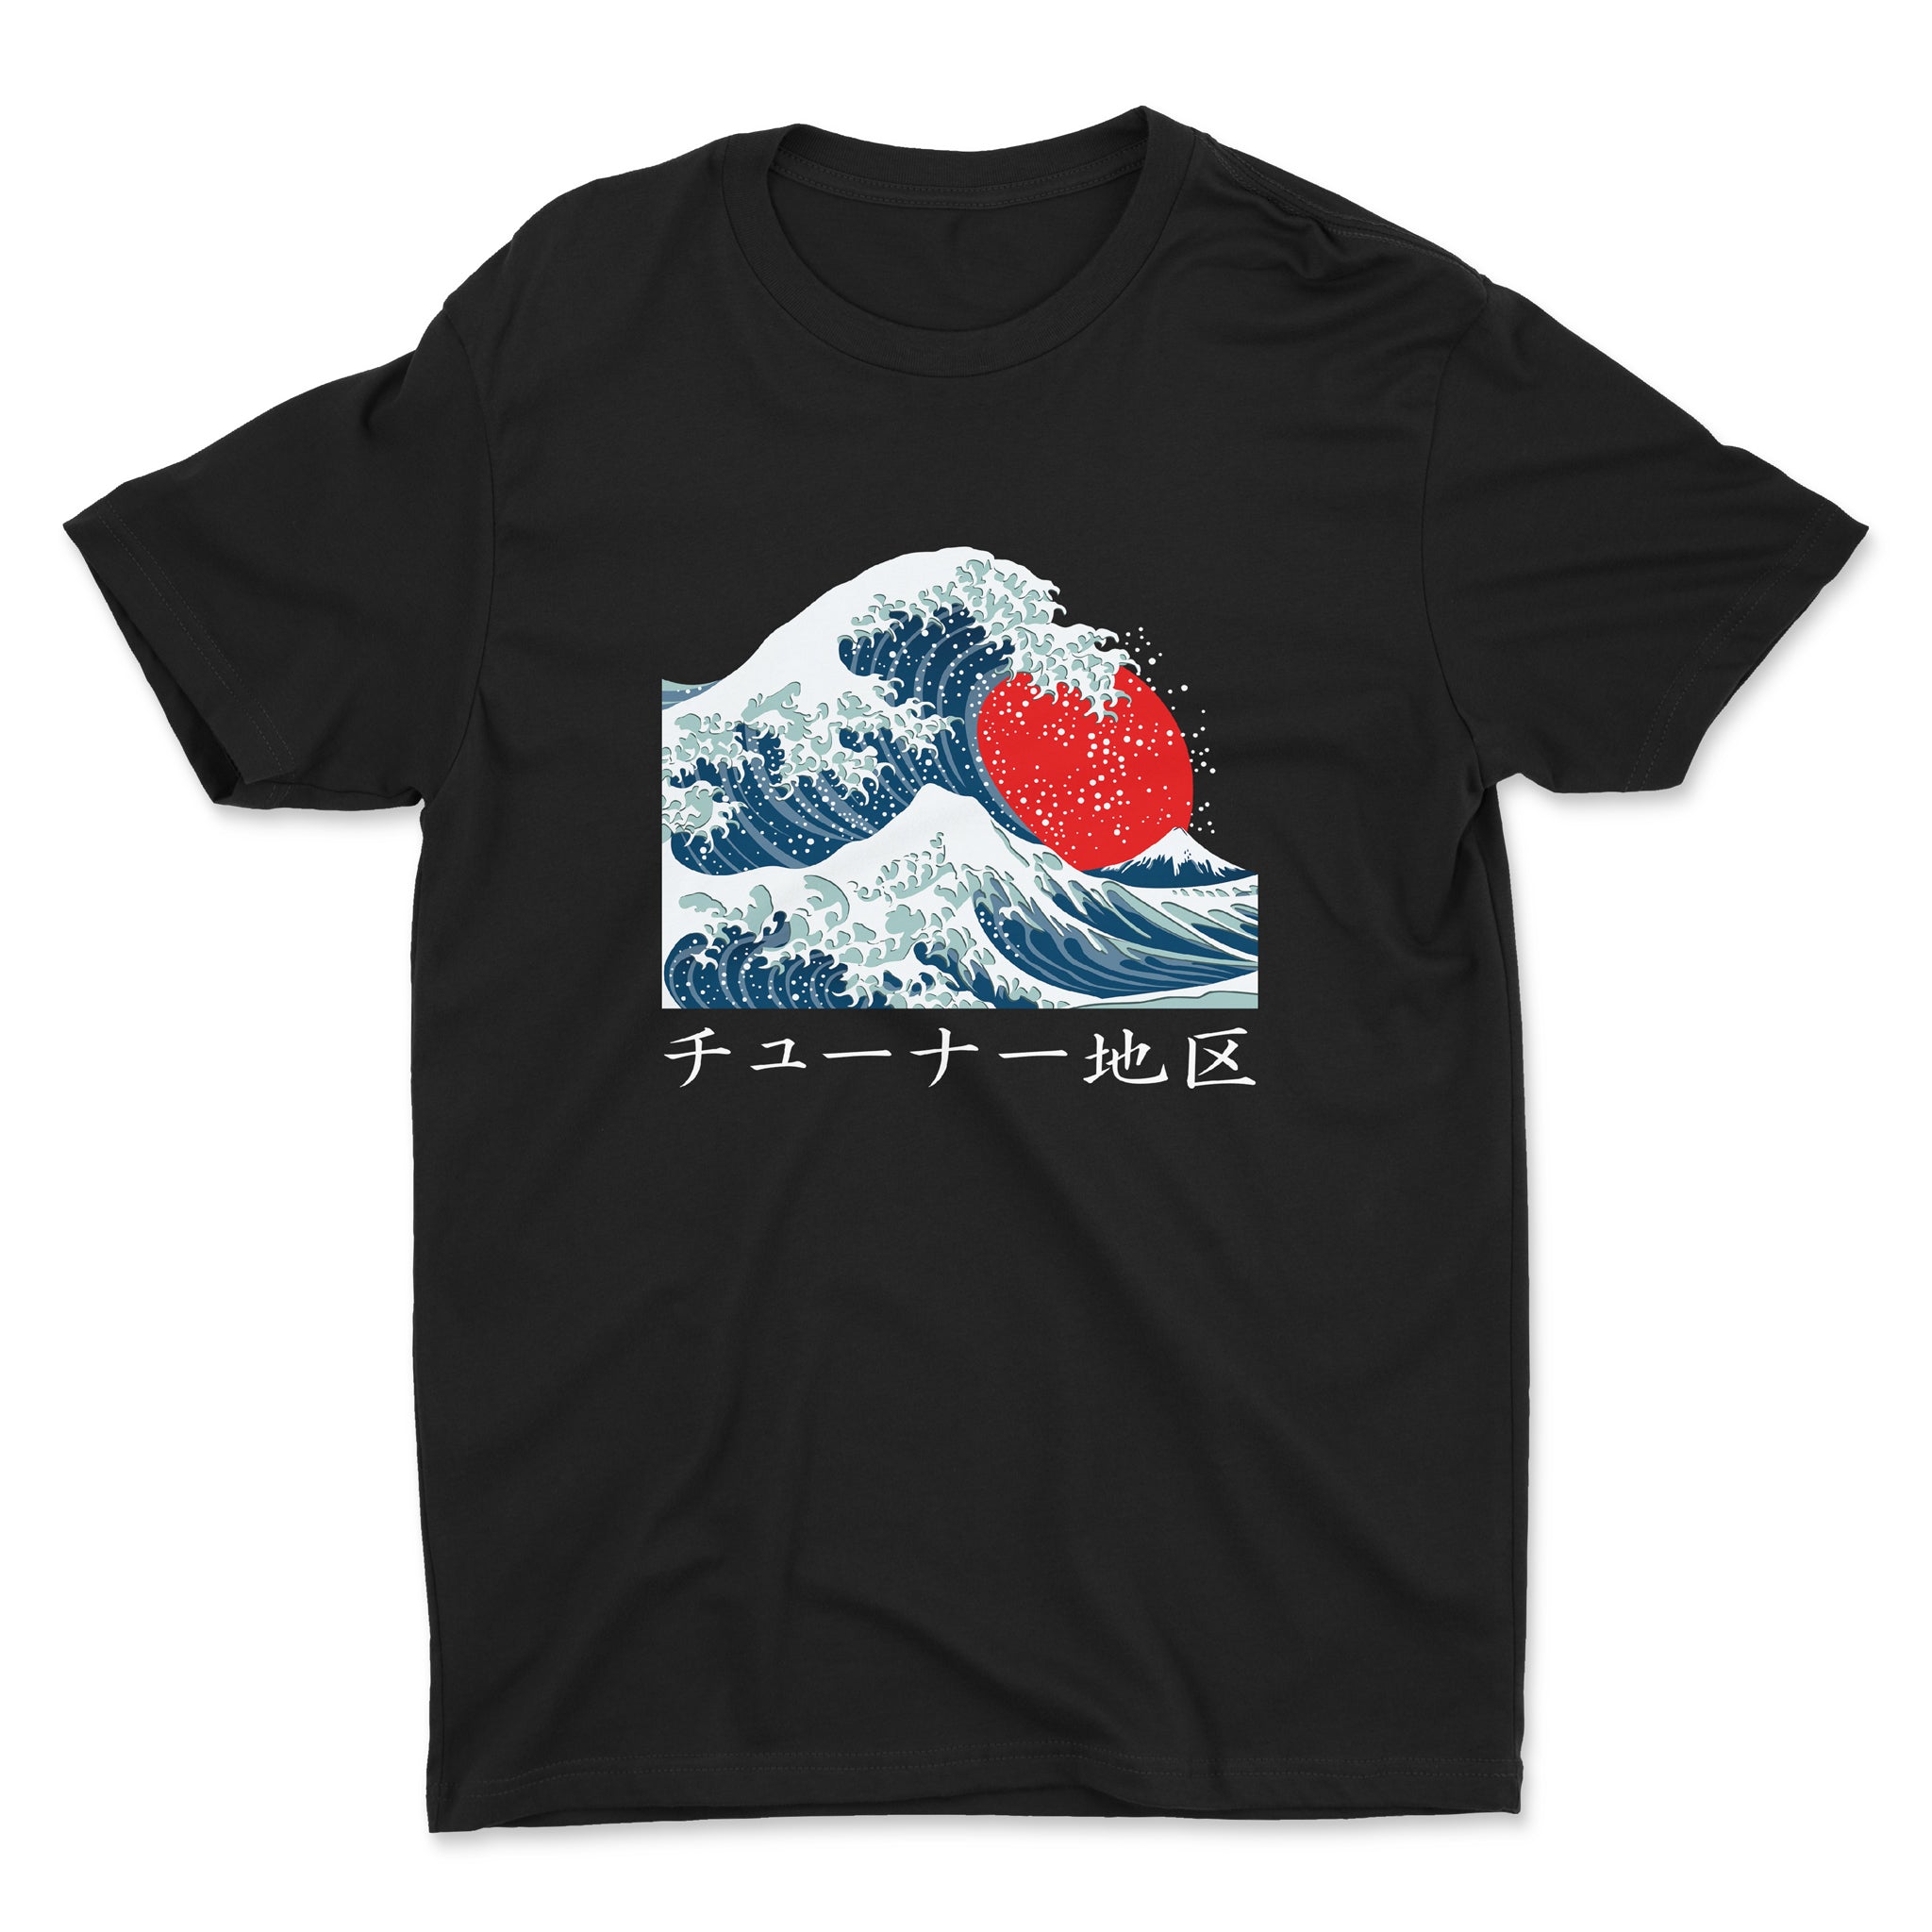 Japanese Waves Kanagawa - Car T-Shirt - Black.